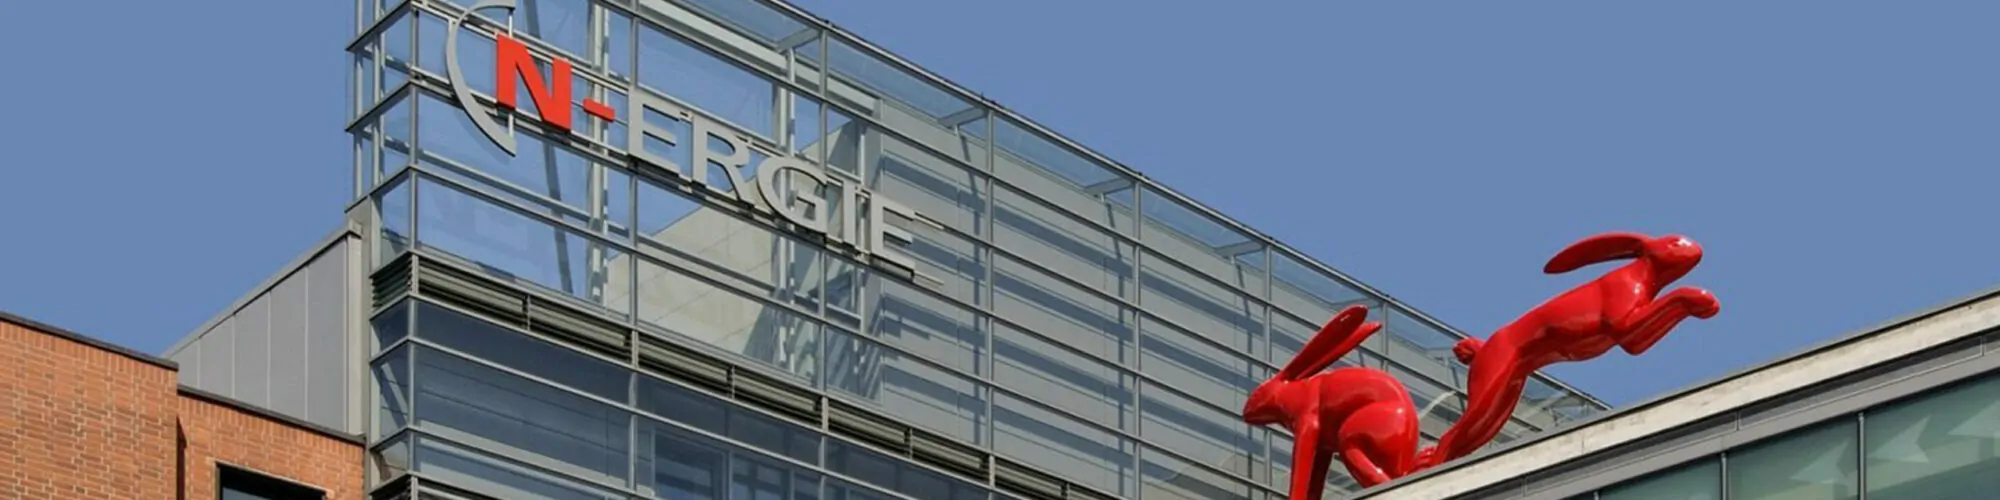 Bild des Firmengebäudes von N-ERGIE, valantic Case Study N-Ergie